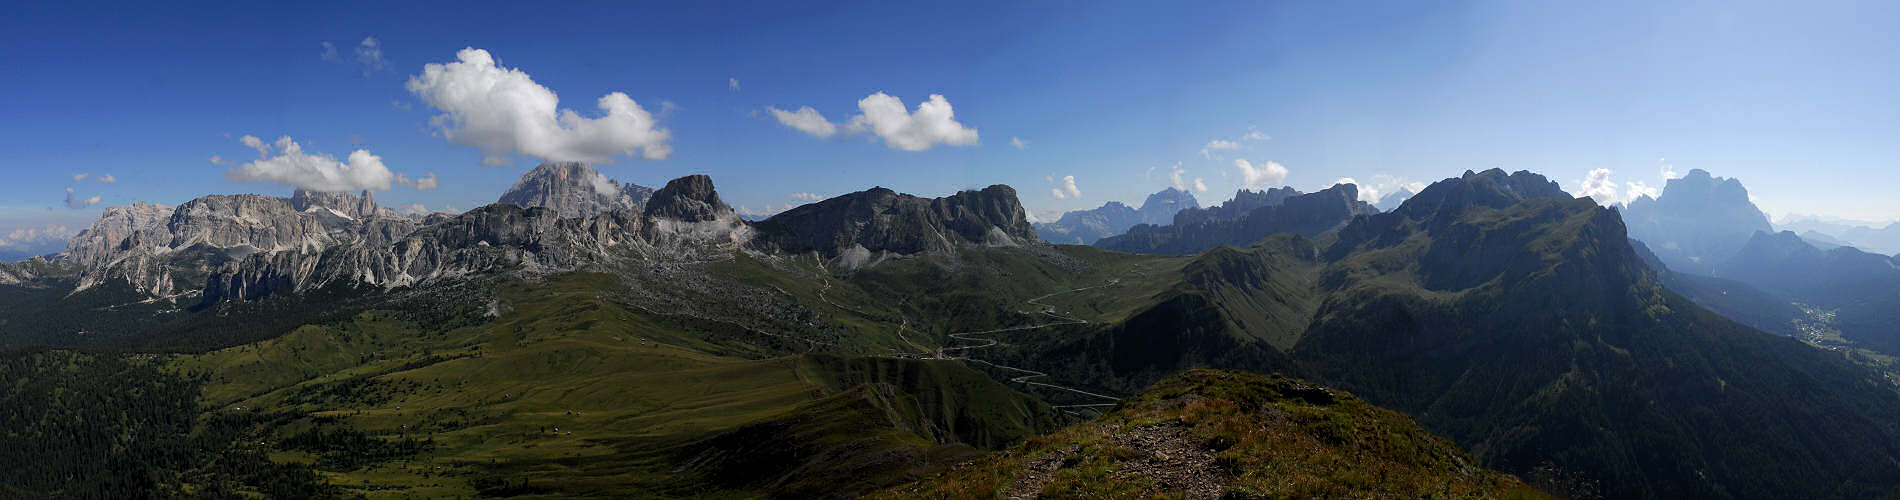 Dolomiti, Monte Pore, passo Giau gruppo del Pelmo